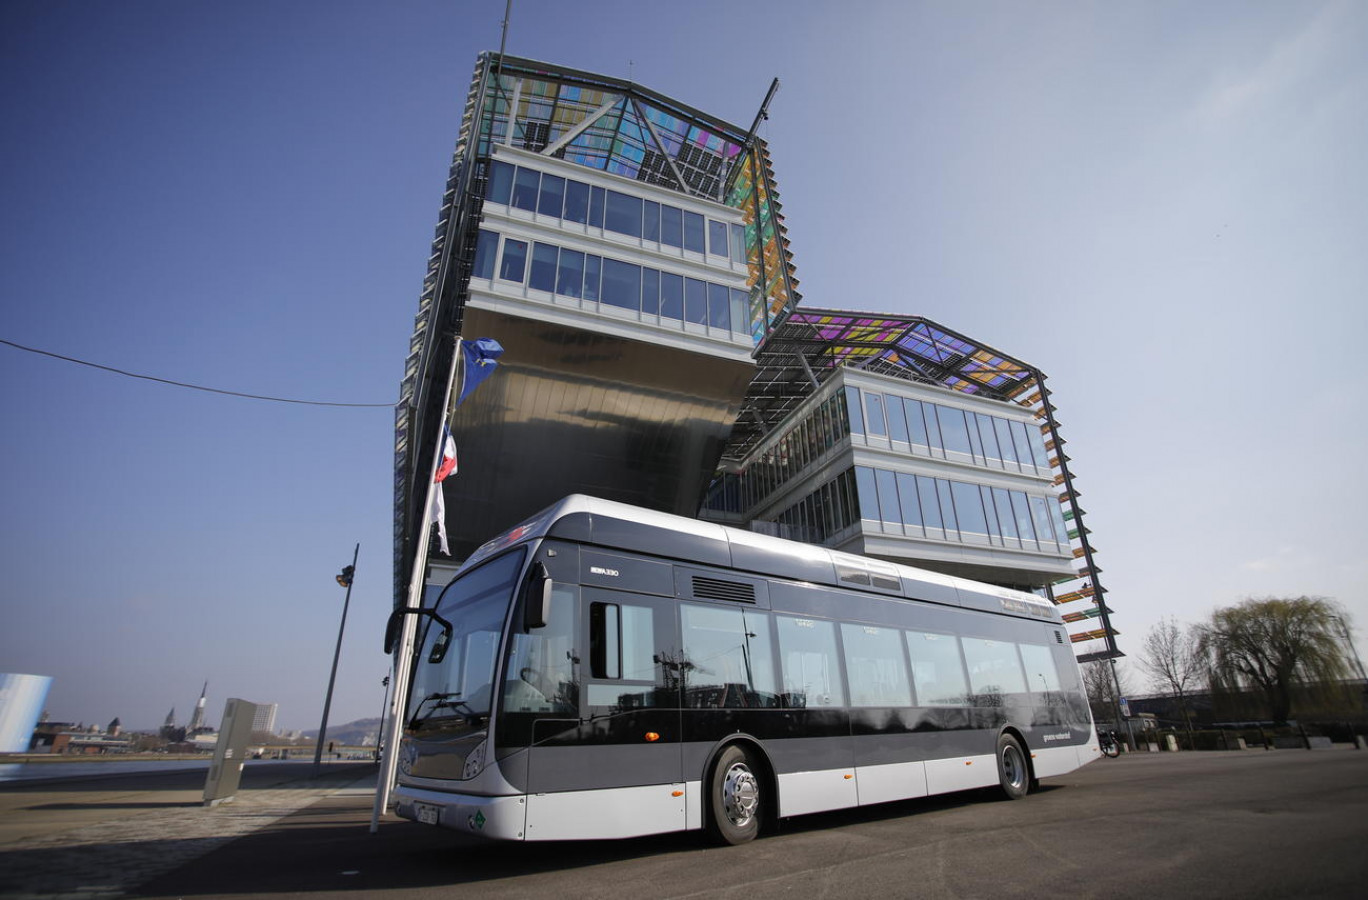 La Métropole Rouen Normandie avait annoncé en mars dernier l'acquisition de 11 bus à hydrogène. (Photo Métropole Rouen Normandie)